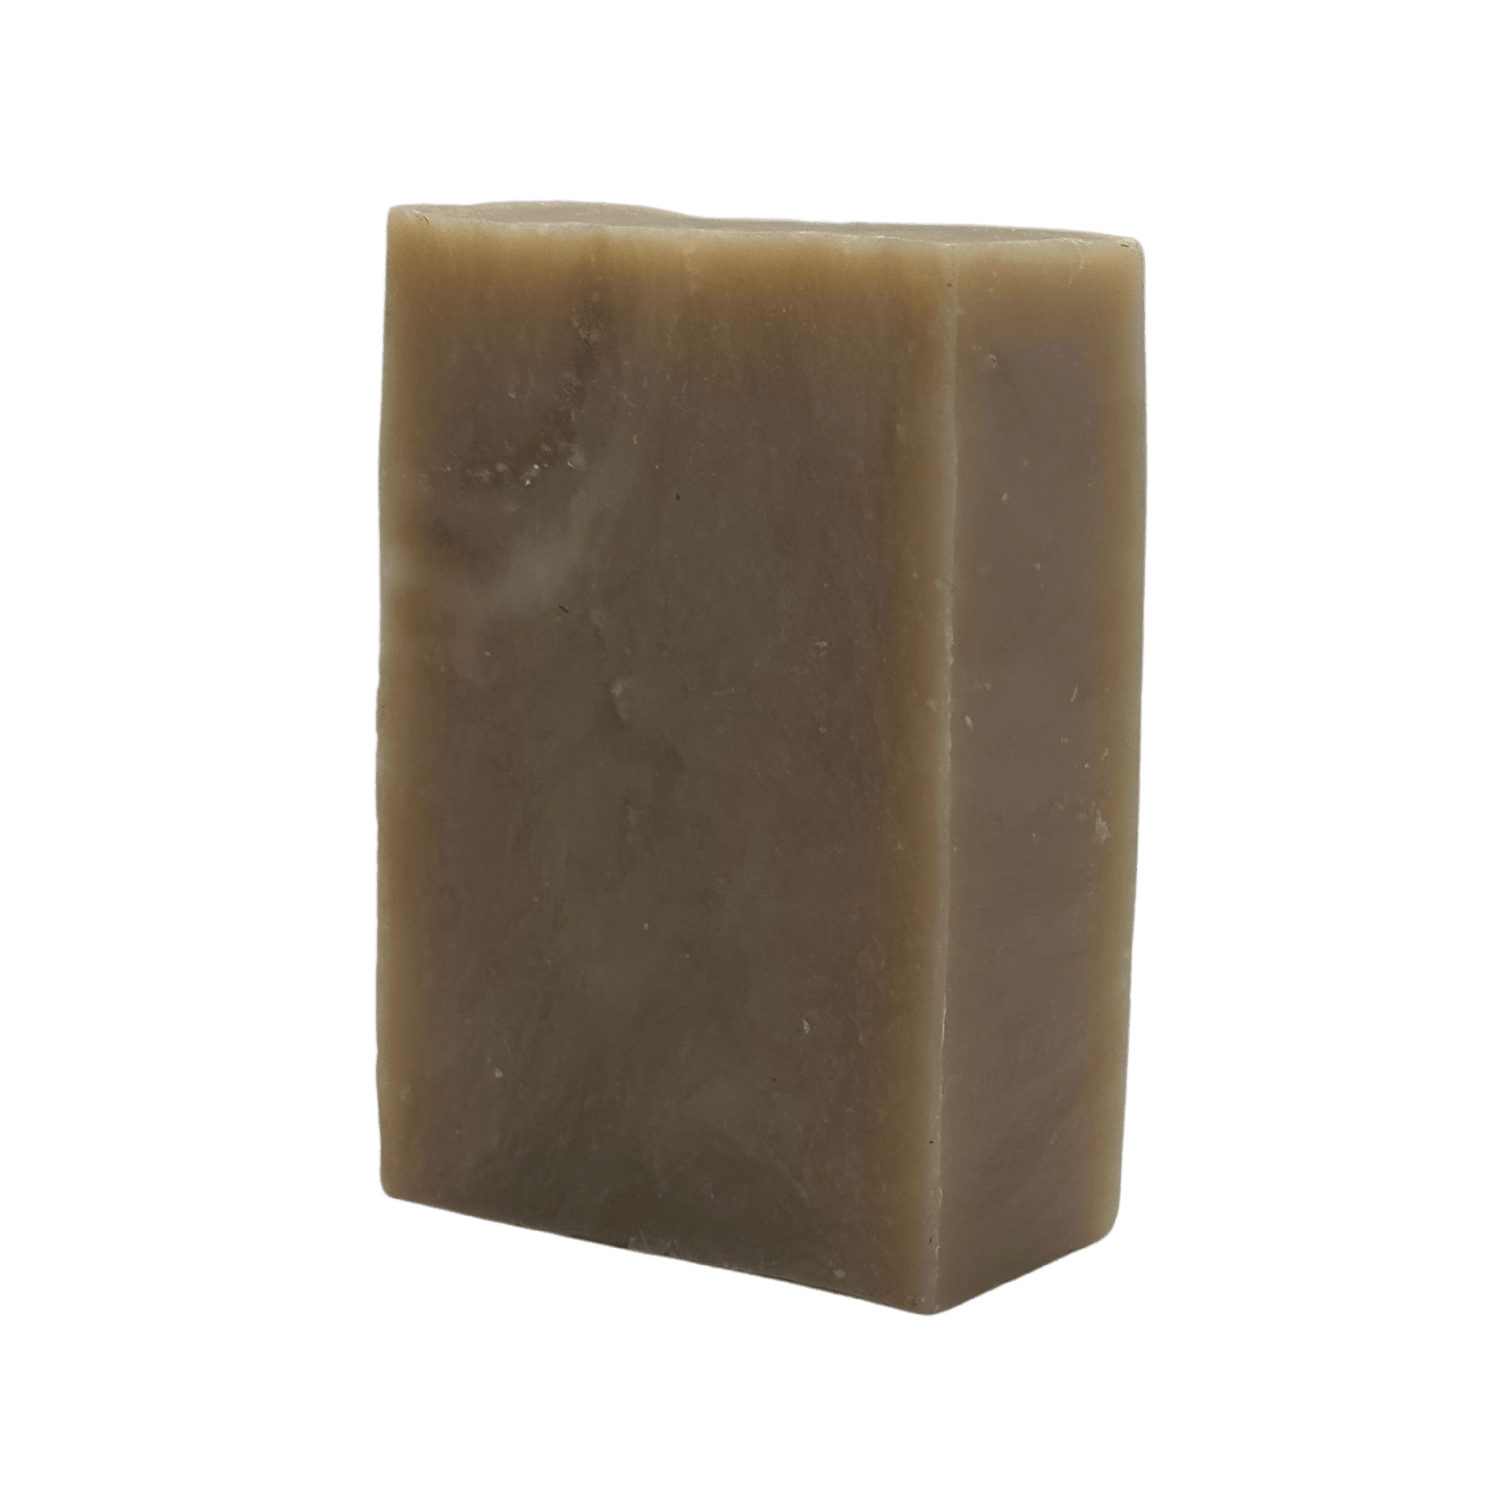 Woods: Bar Soap (4 oz) - theStubblery